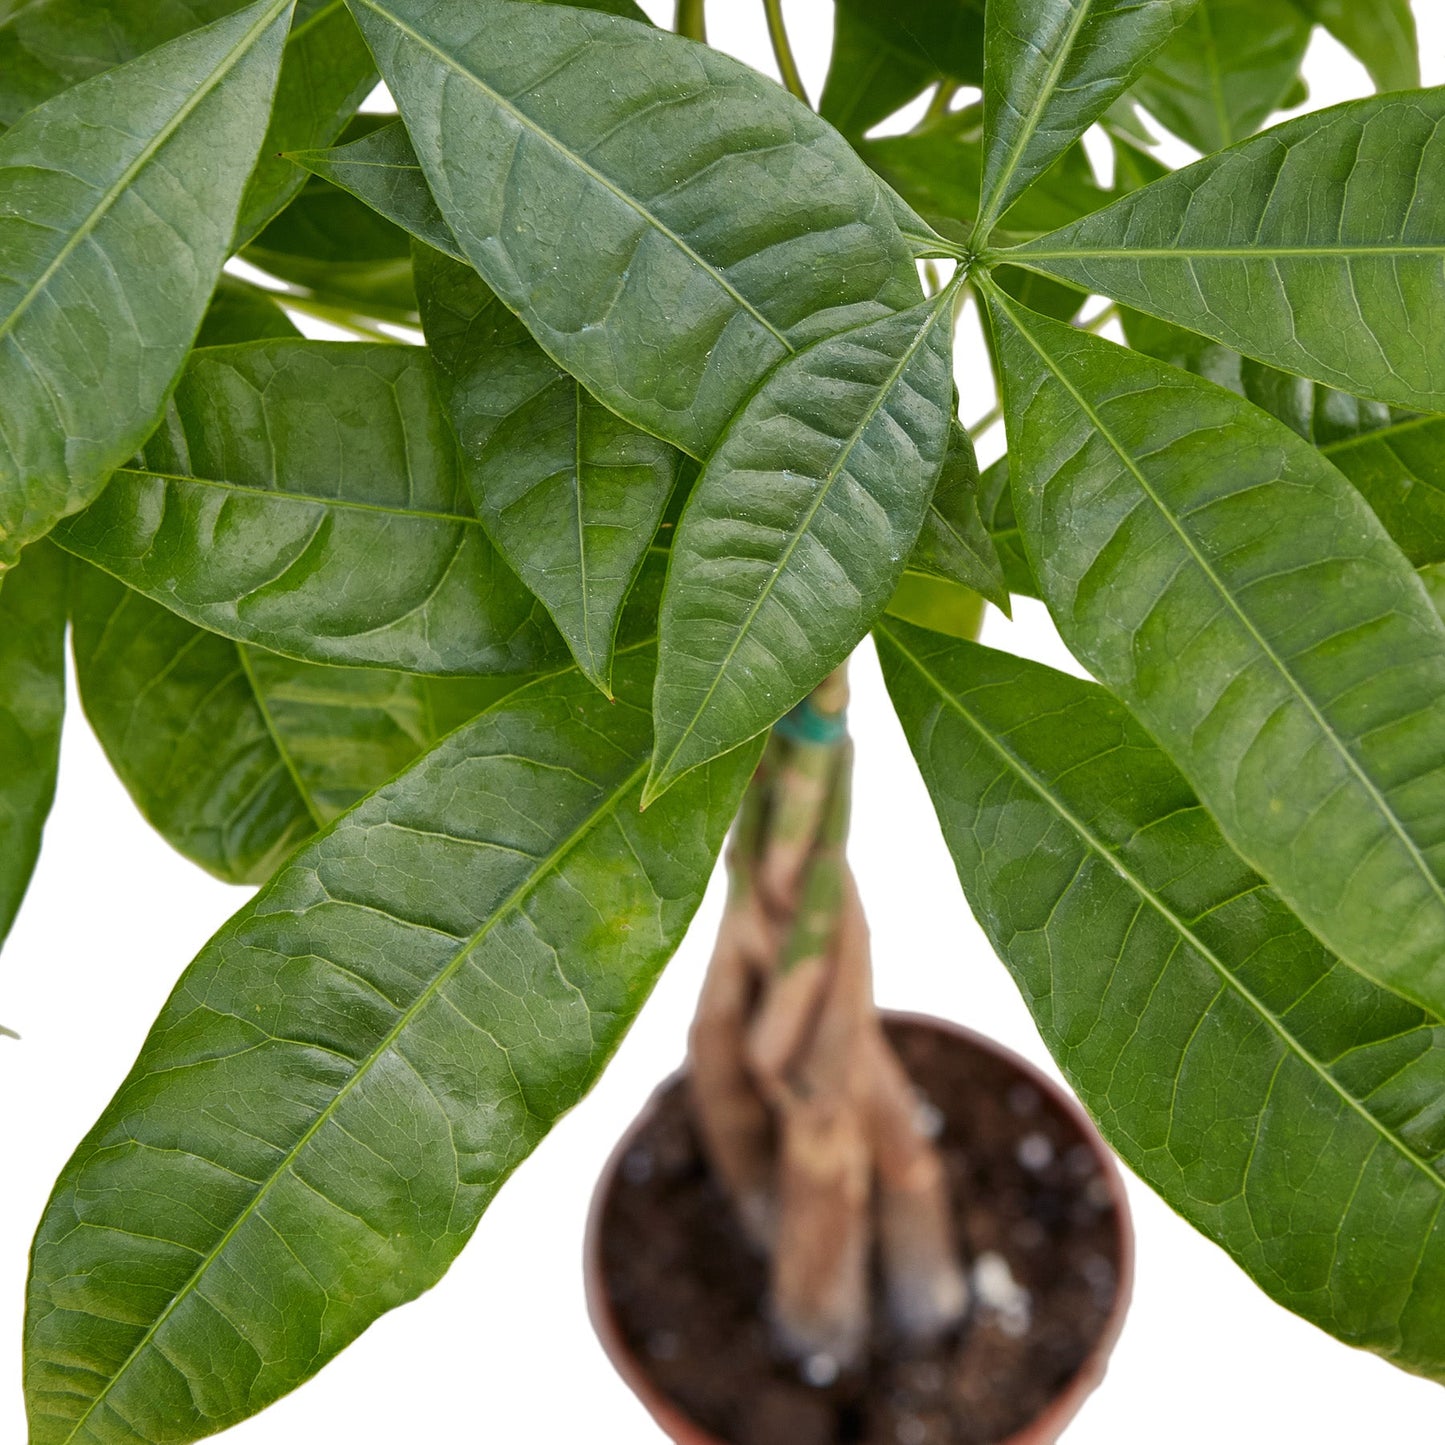 Money Tree 'Guiana Chestnut' Pachira Braid